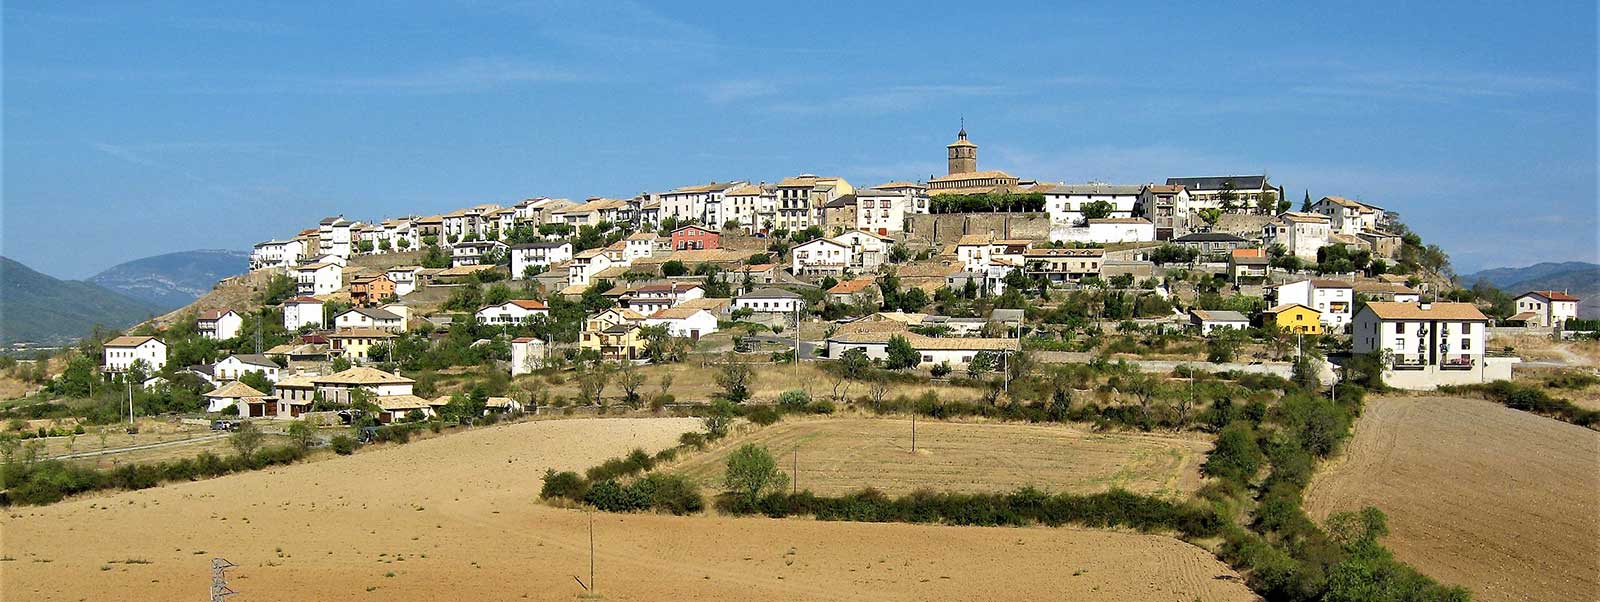 Berdún tiene una ubicación estratégica a 30 kilómetros de Jaca y cerca de la frontera con Navarra. 